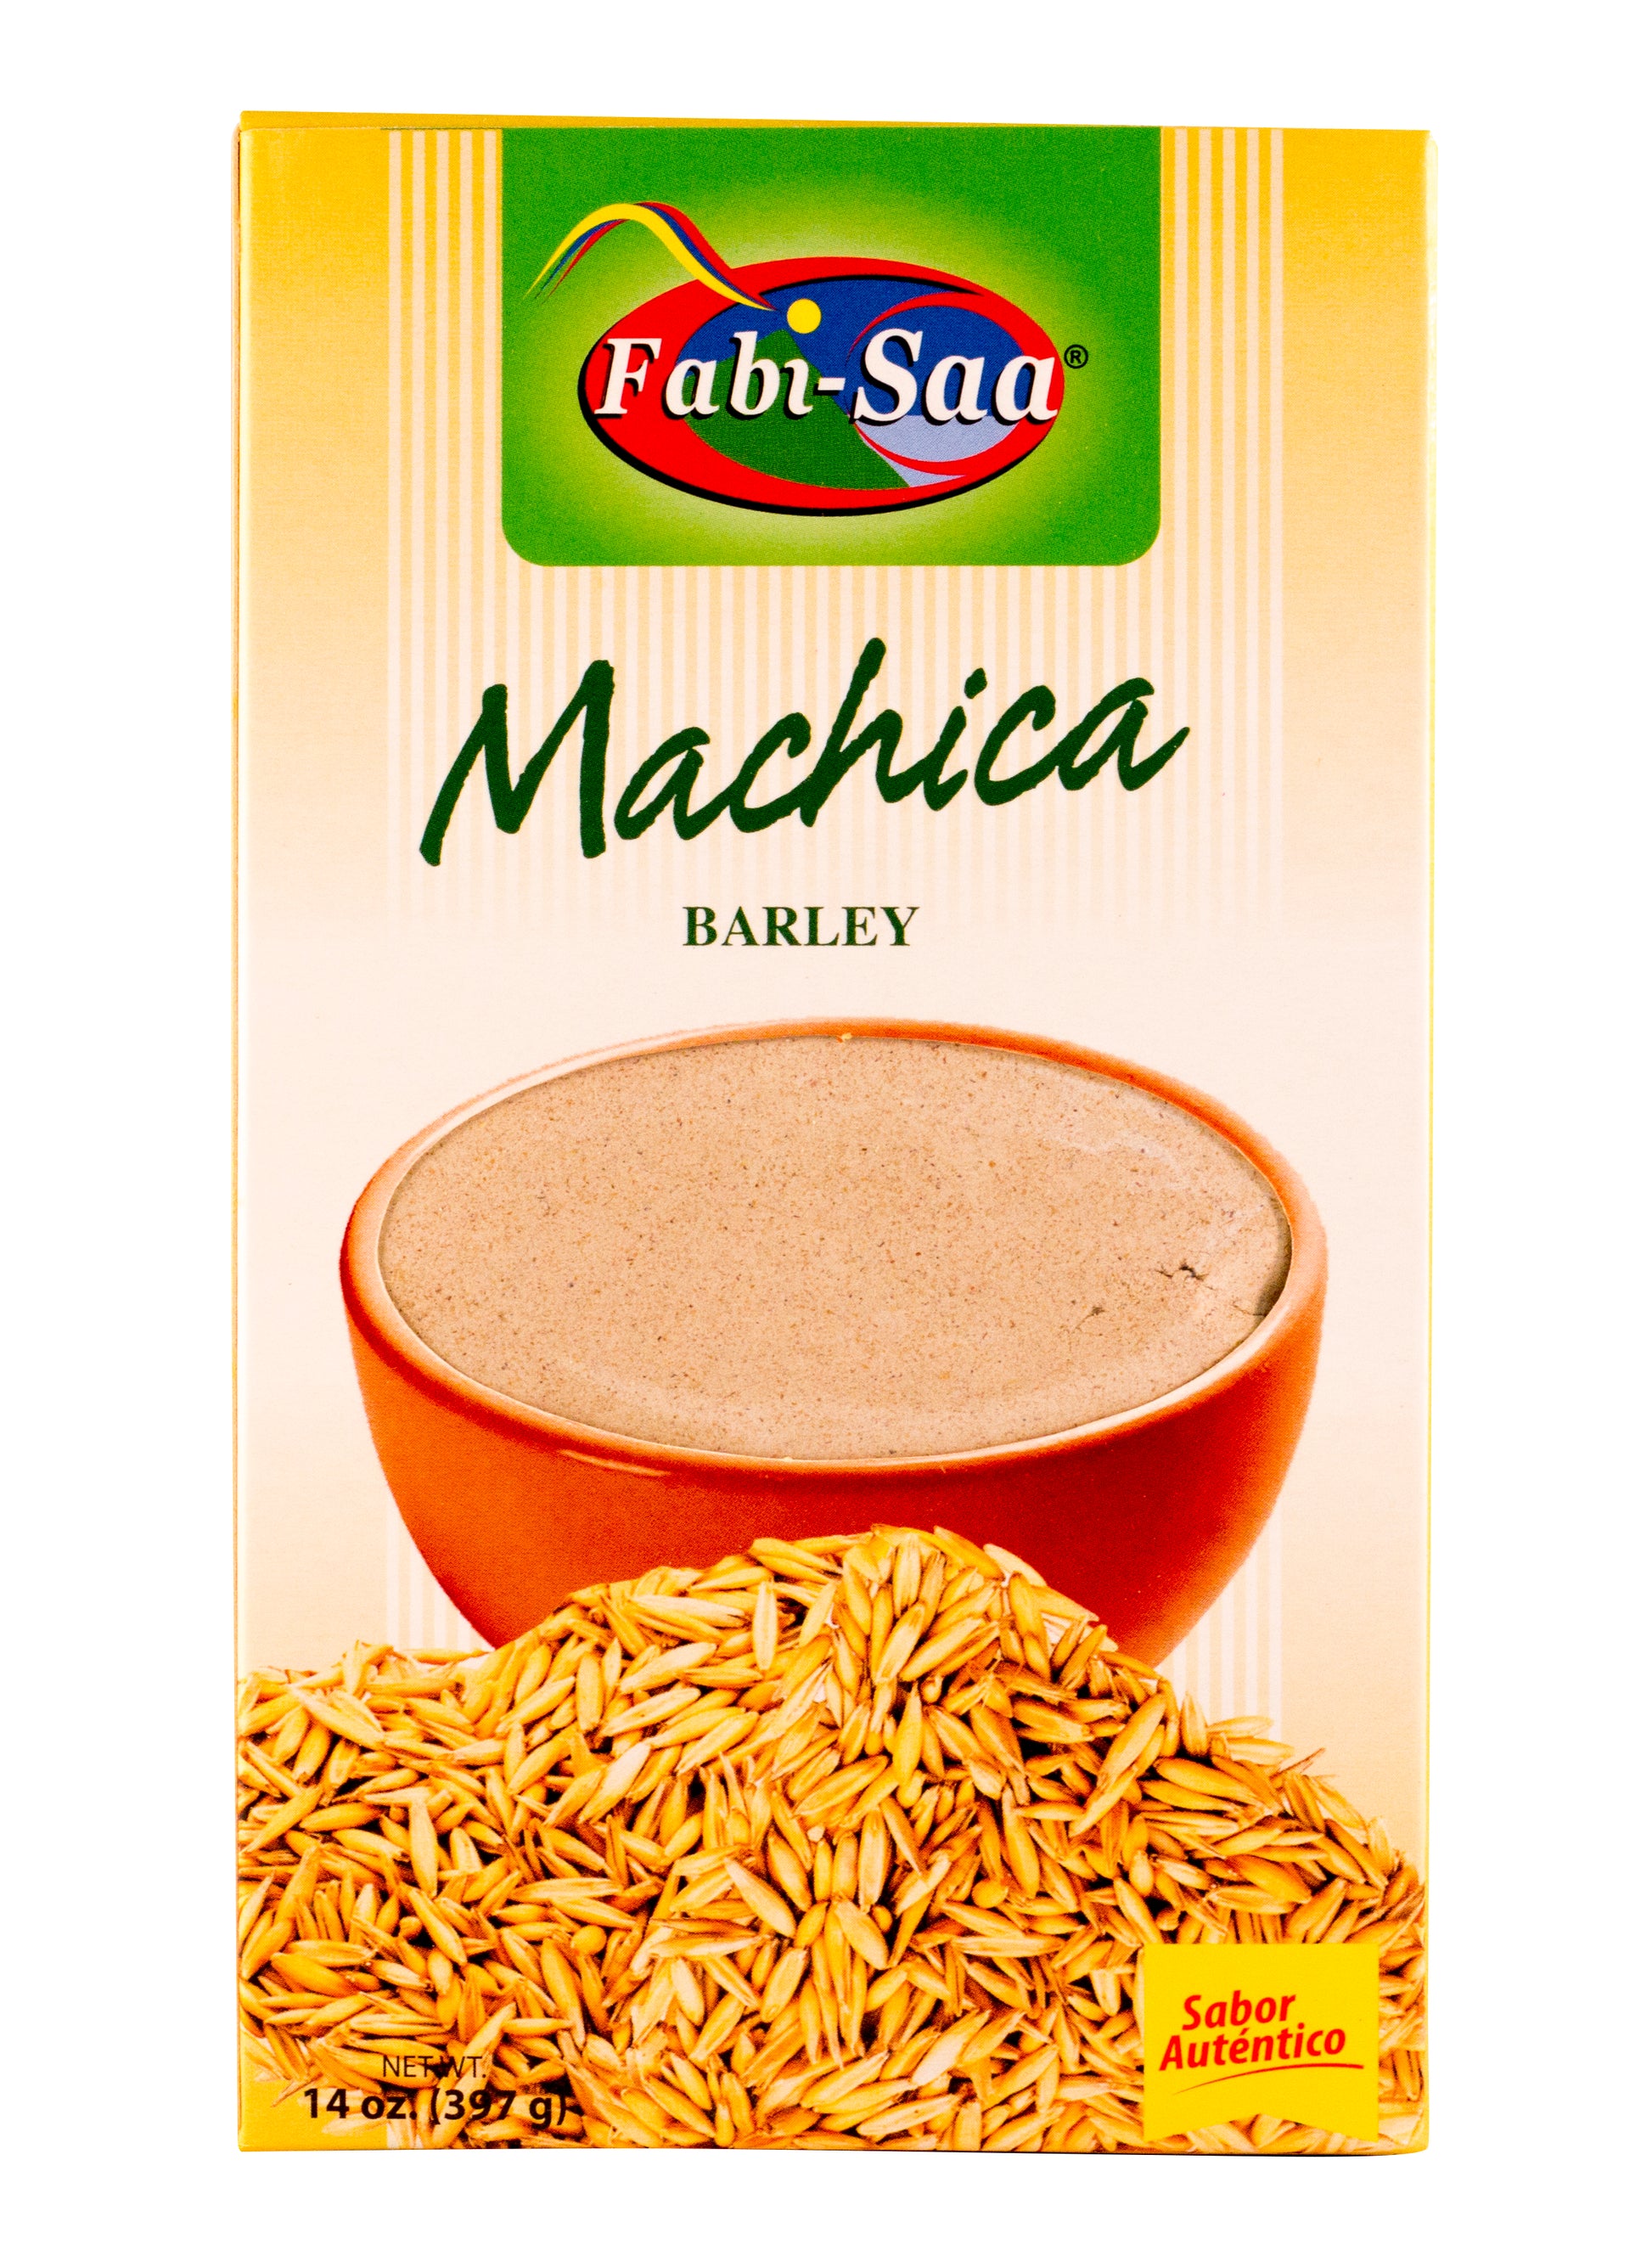 Machica-14 oz-Fabi Saa Online Sales LLC